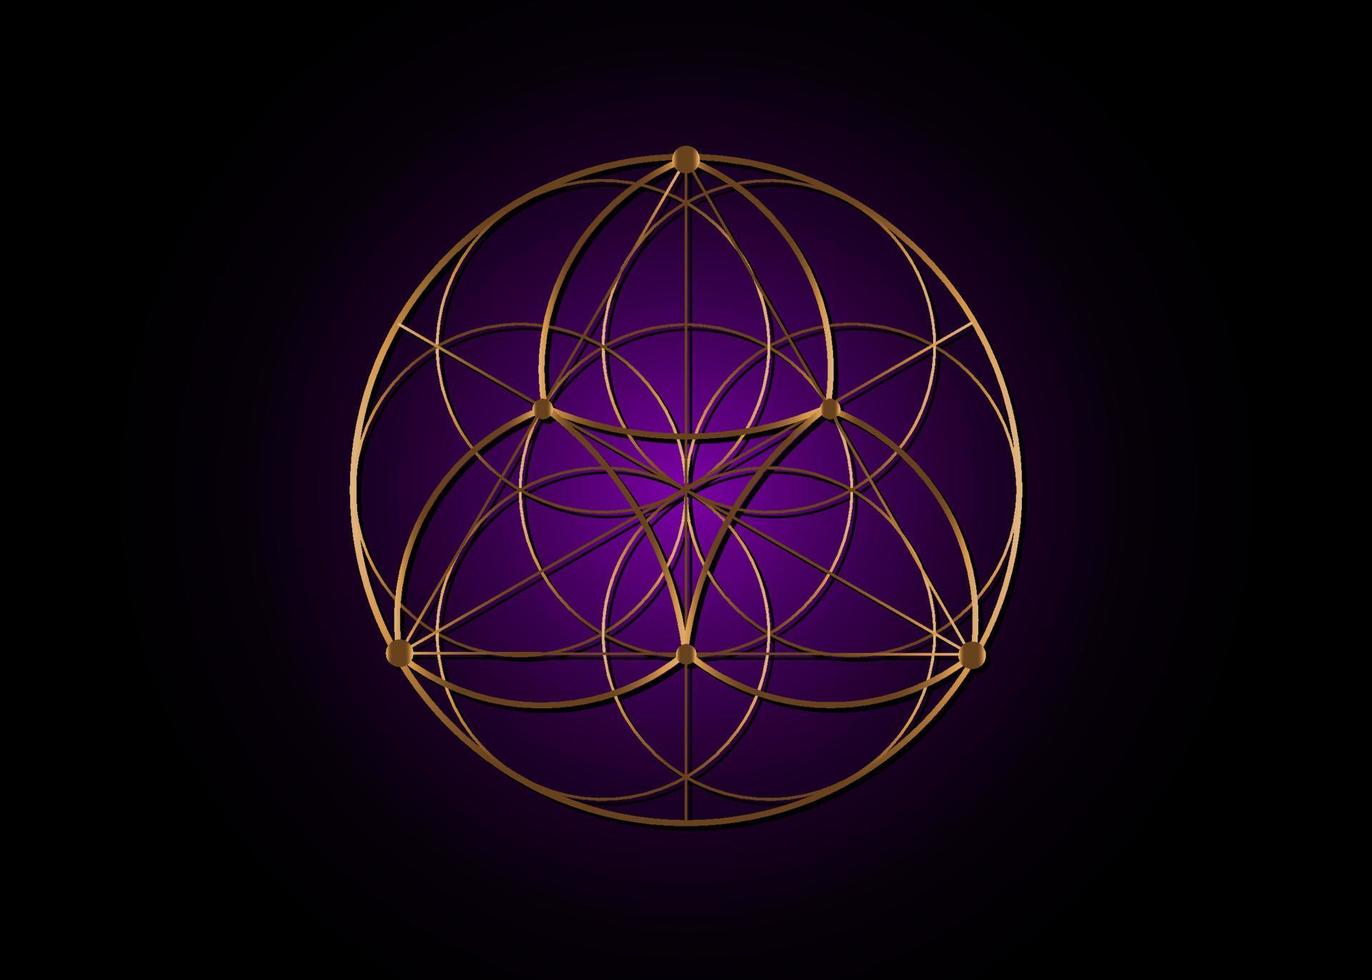 semente flor do ícone de lótus da vida, geometria sagrada da mandala yantra, símbolo dourado de harmonia e equilíbrio. talismã místico de cor roxa, vetor de linhas de ouro isolado em fundo preto